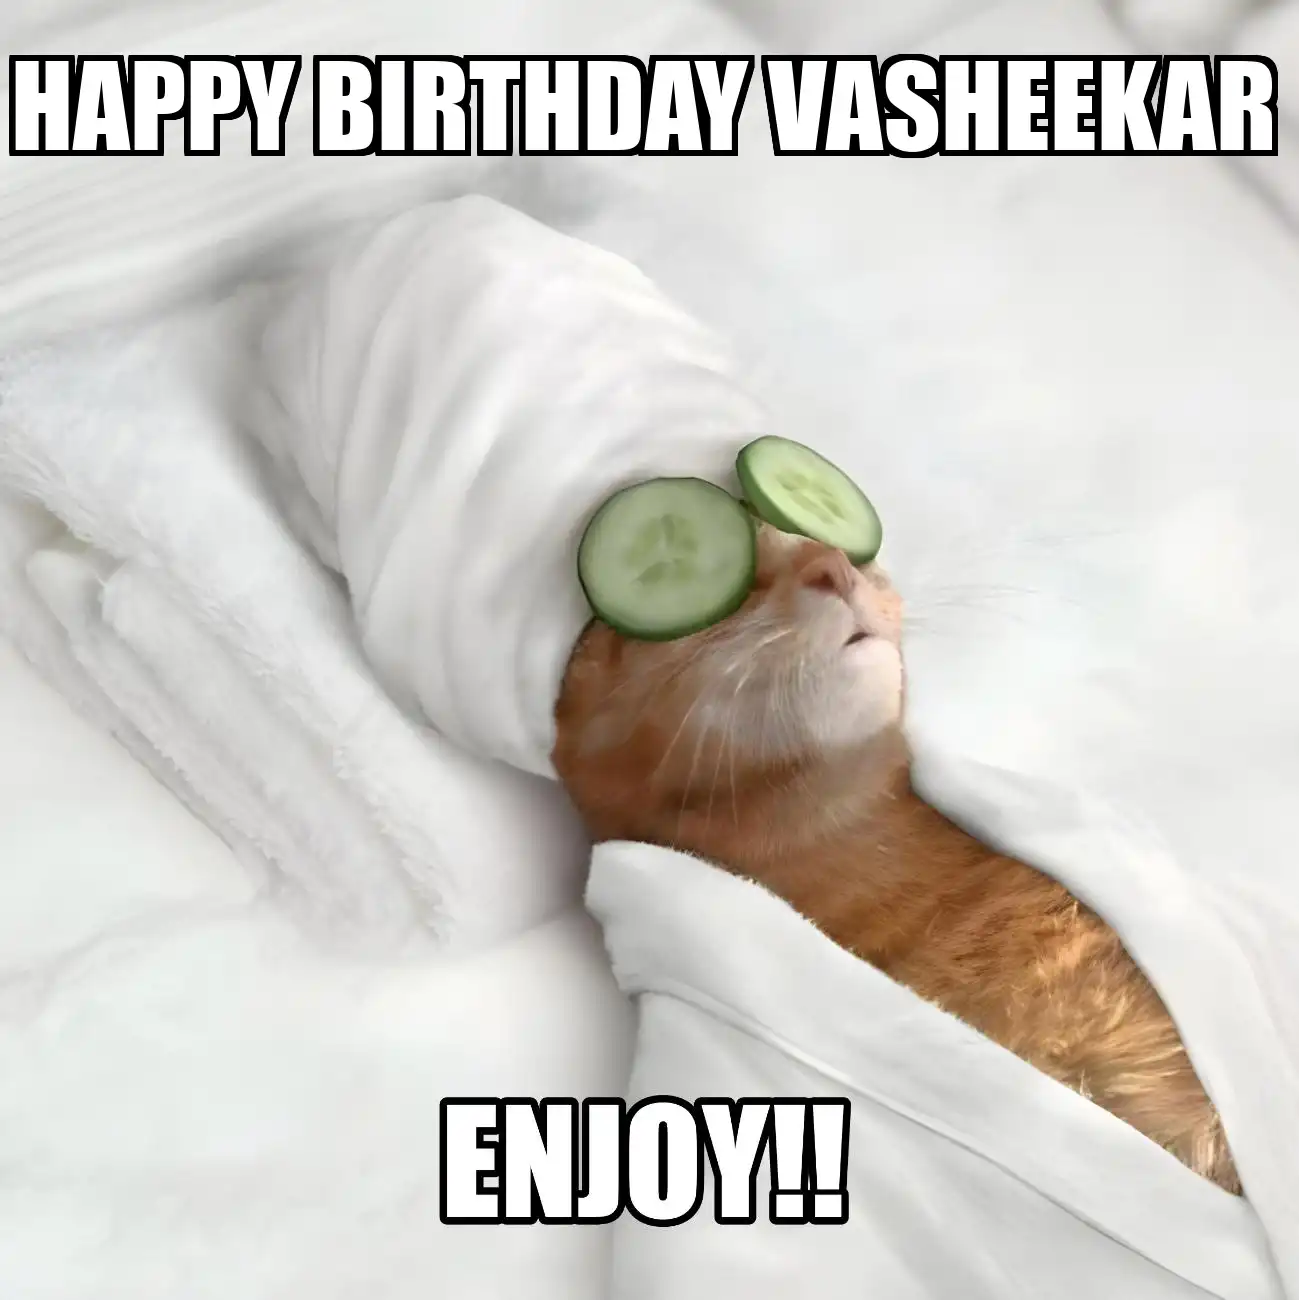 Happy Birthday Vasheekar Enjoy Cat Meme